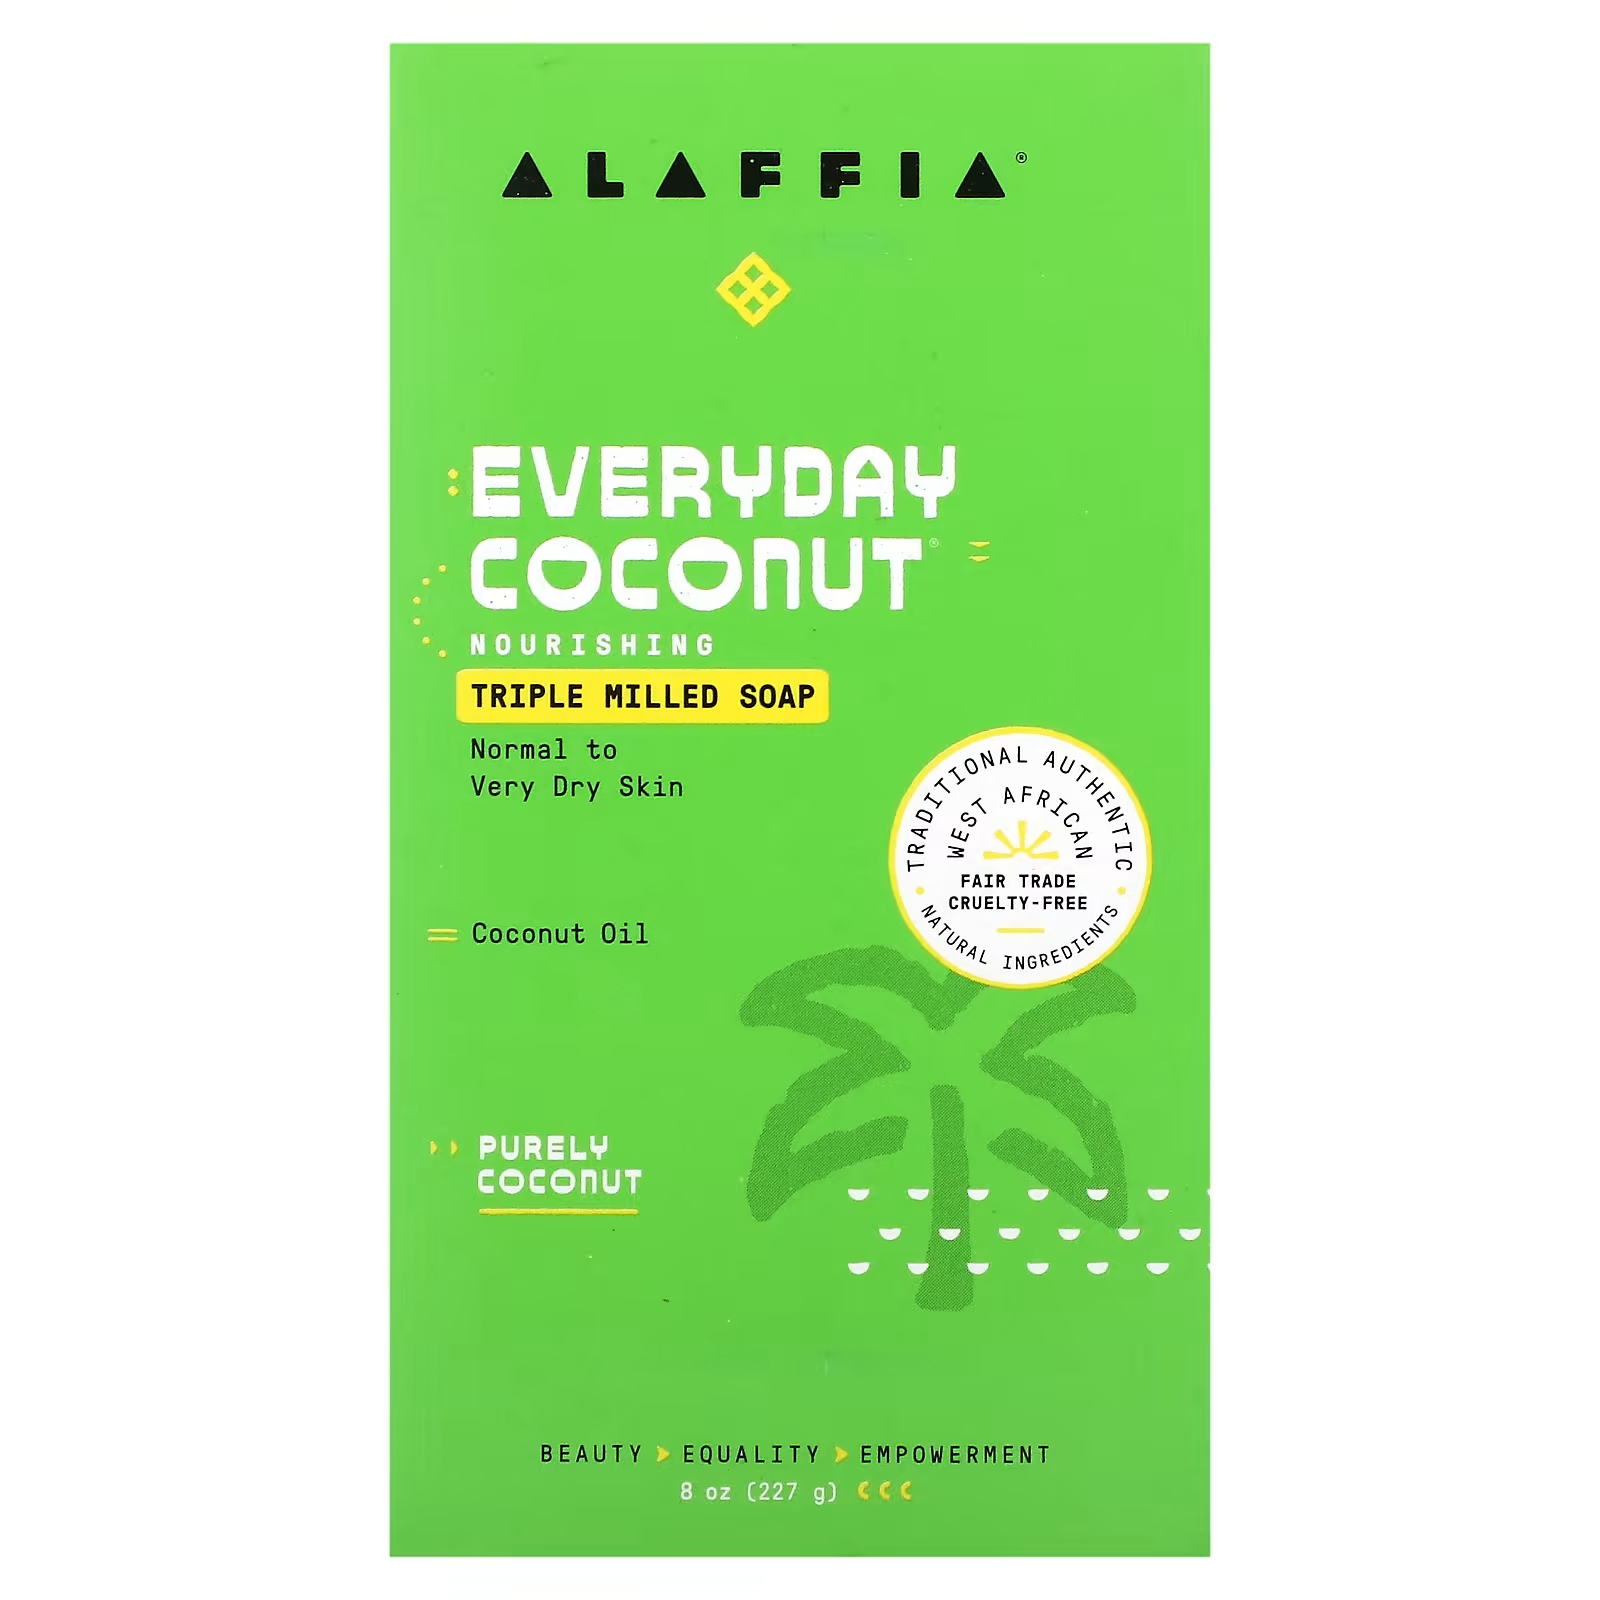 Мыло для рук Alaffia кокос, 227 г alaffia кусковое мыло тройного помола лаванда 227 г 8 унций